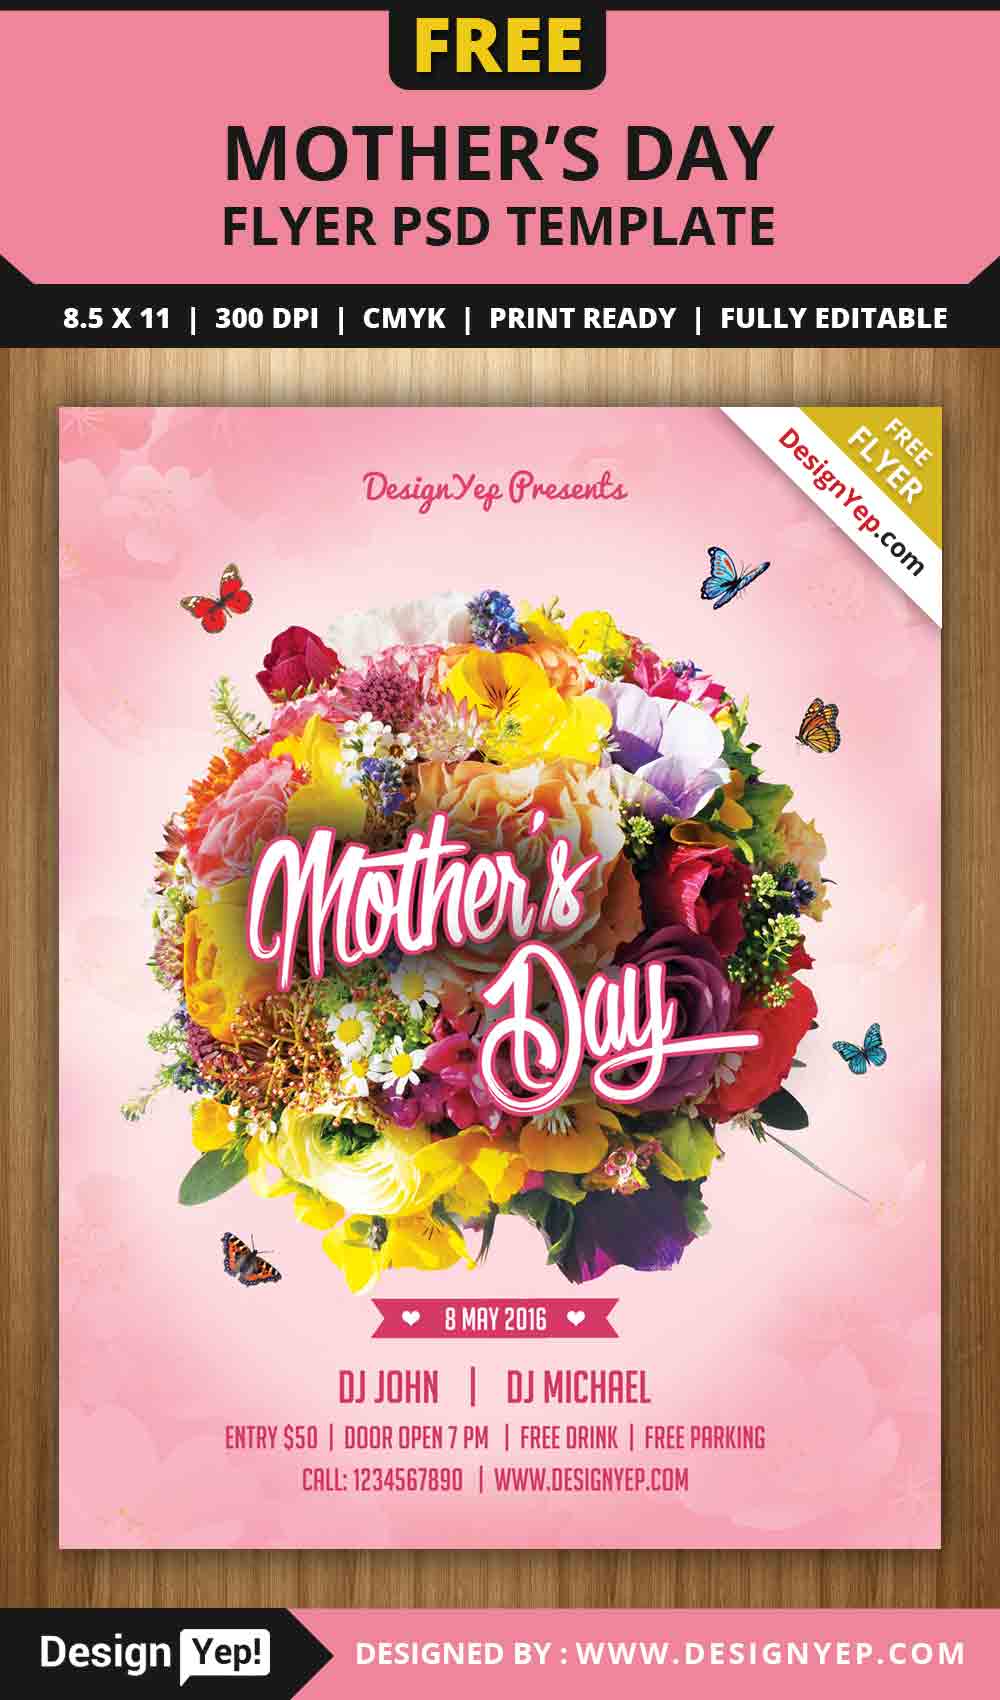 Free Mothers Day Flyer PSD Template 5656 Designyep Dia das Mães: 24 Flyers Gratuitos em PSD